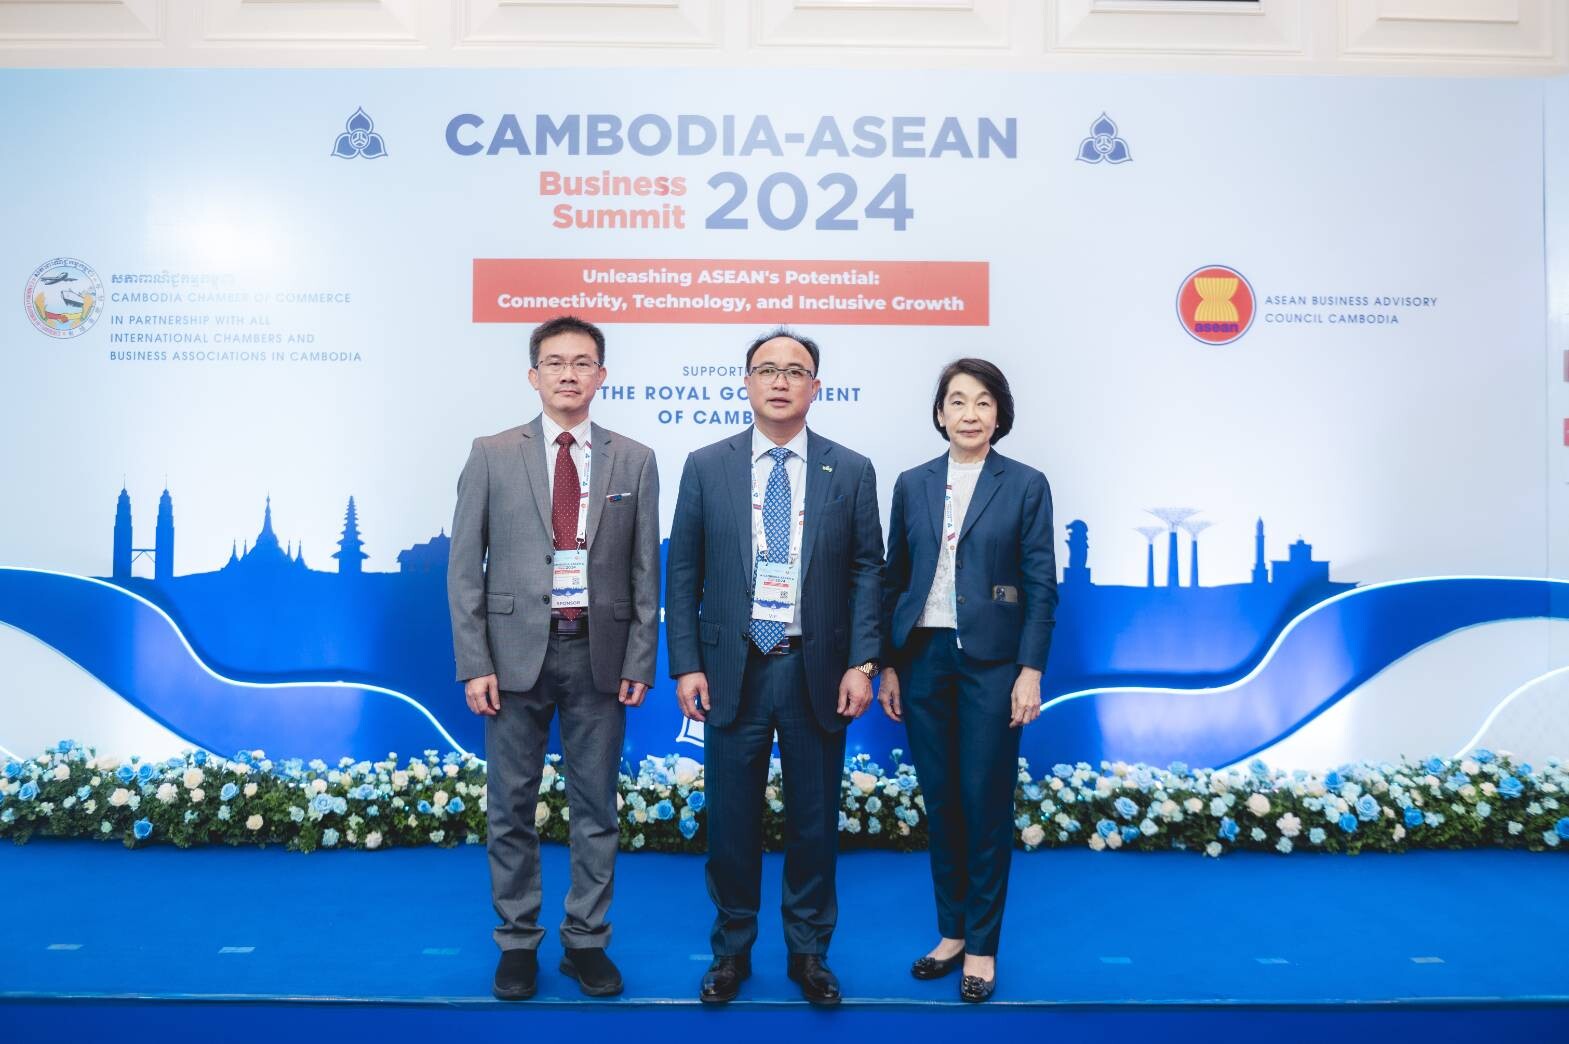 โรงพยาบาลกรุงเทพฯ โชว์ศักยภาพธุรกิจการแพทย์ของไทย บนเวทีอาเซียน ในงาน "The CAMBODIA-ASEAN BUSINESS SUMMIT 2024" ประเทศกัมพูชา